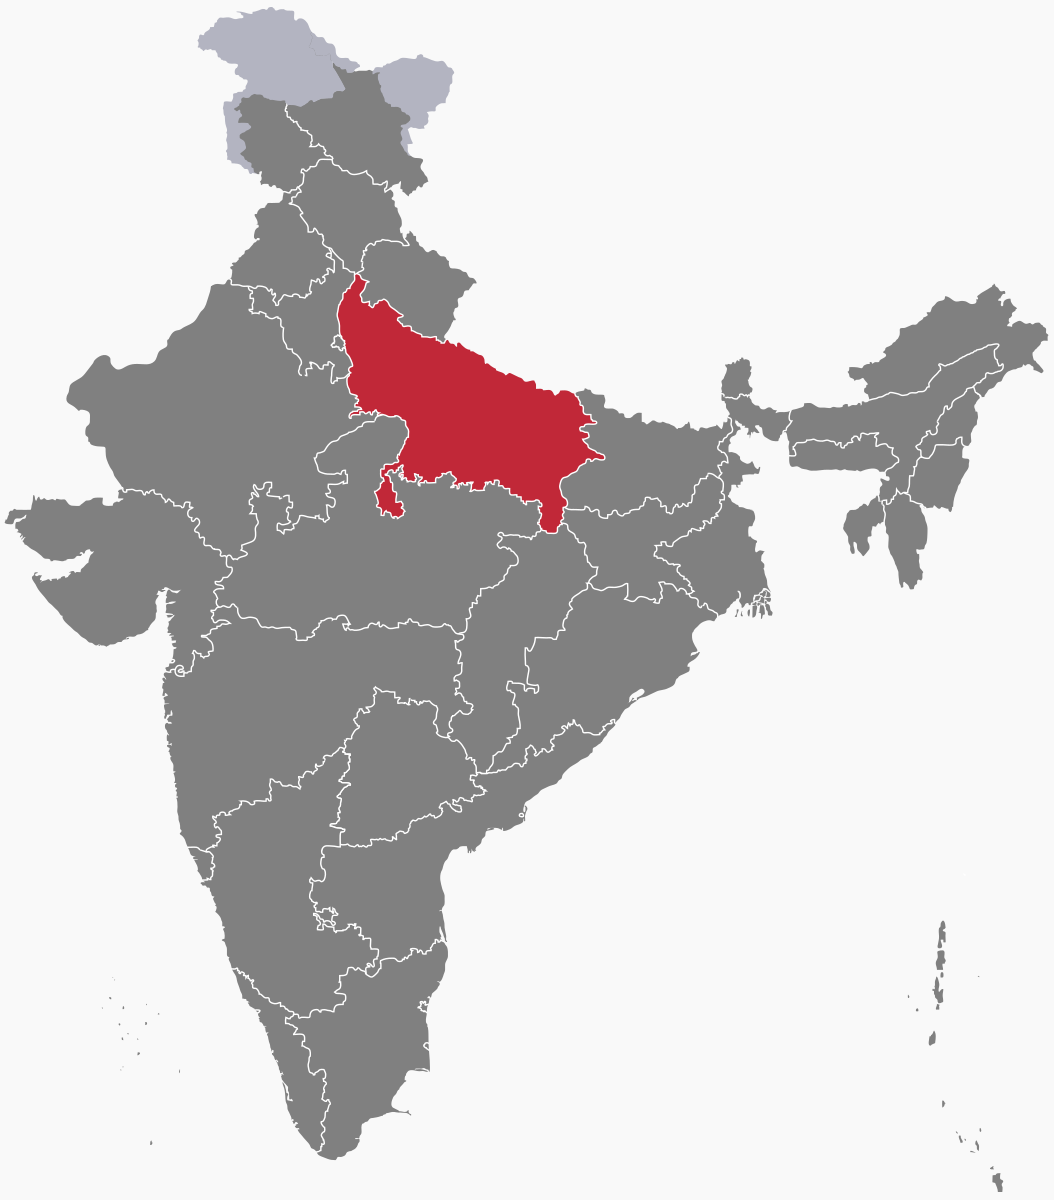 Outline of Uttar Pradesh